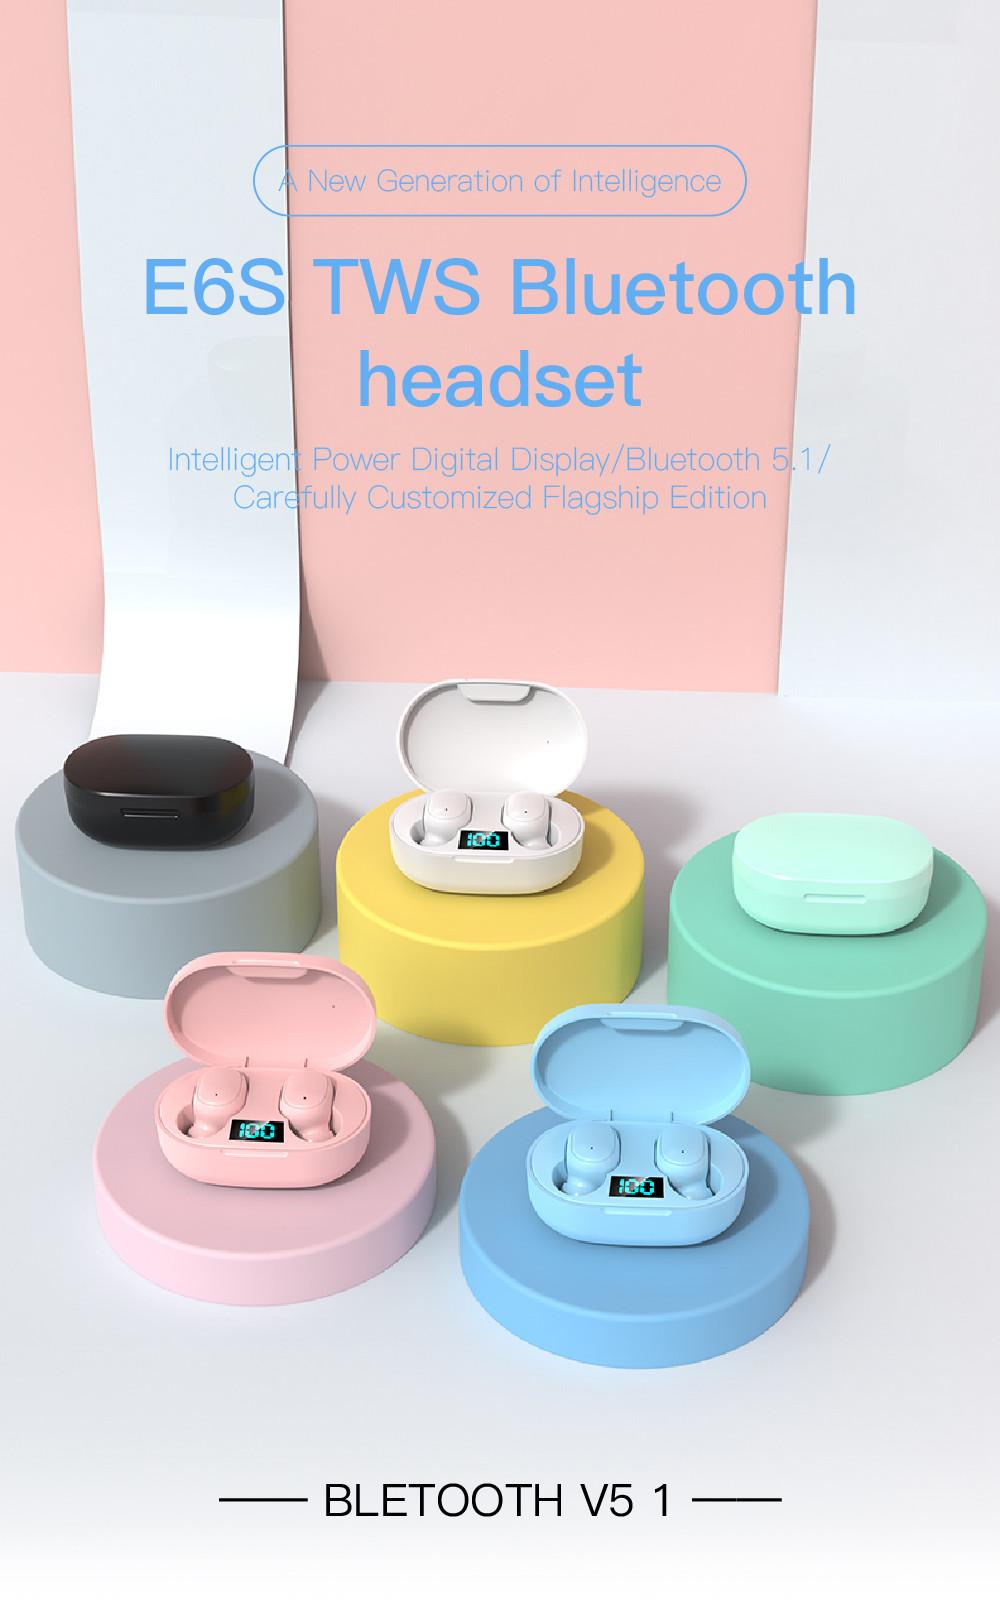 CINCATDY Tai Nghe Bluetooth V5.0 Earbuds Gaming Headphone True Wireless Headset E6S - Hàng Chính Hãng